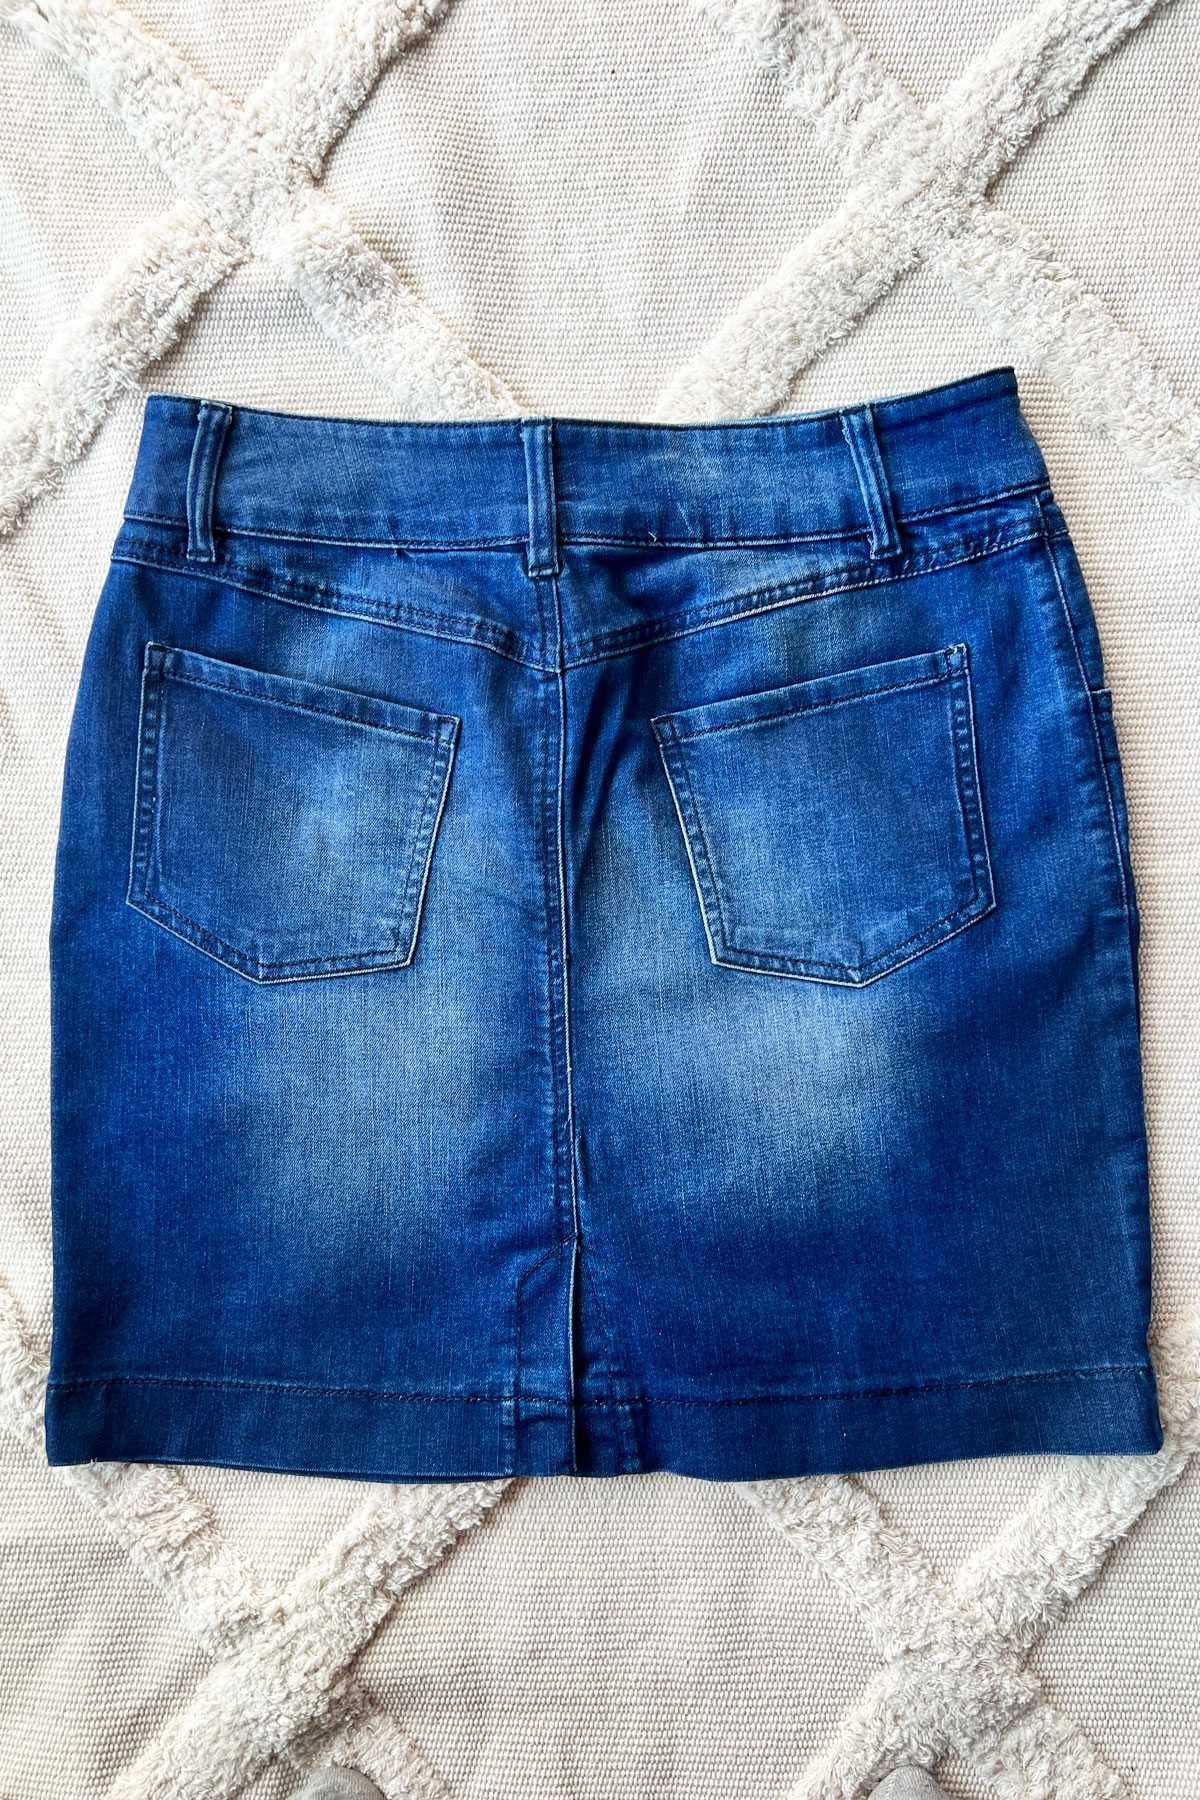 Bonprix Sustainable Collection jeansowa spódniczka mini rozm. 42 XL